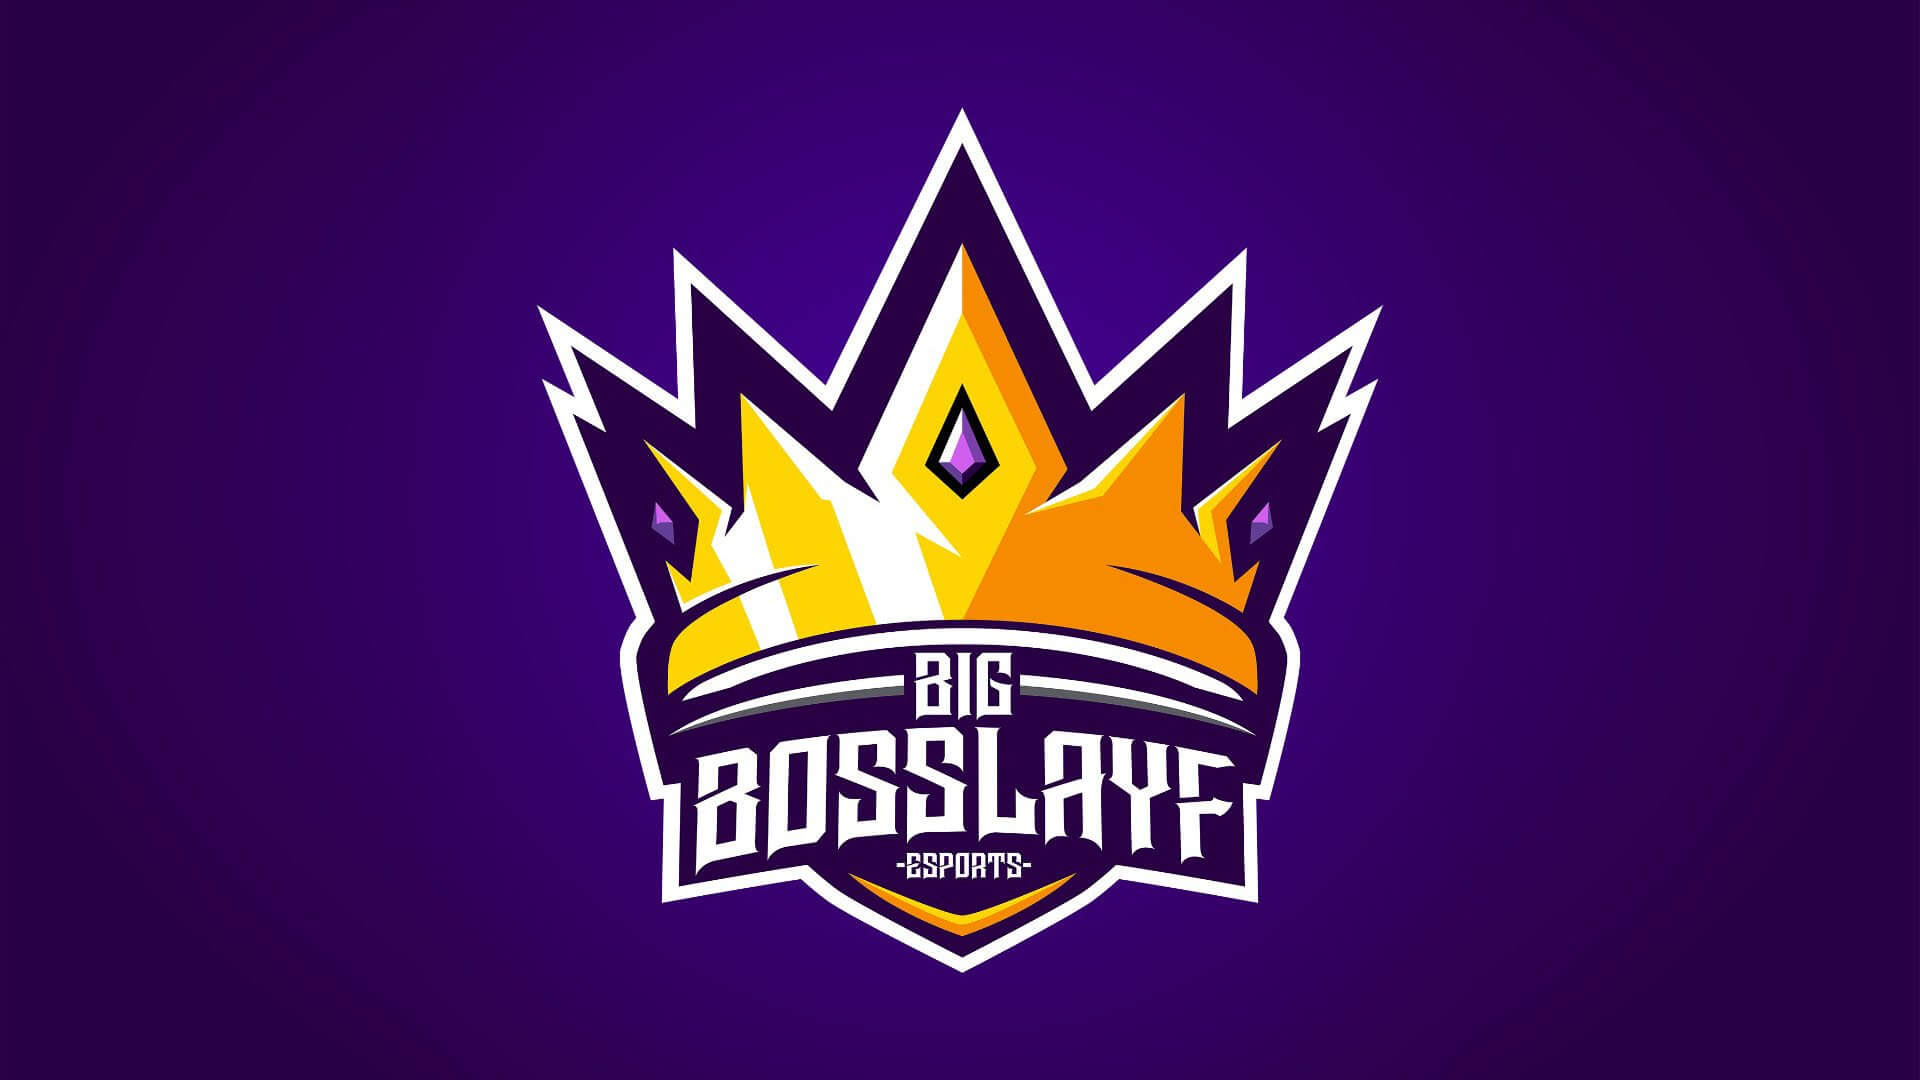 bigbosslayf twitchは、フェイクビット事件に関与した放送局との契約を打ち切りました！